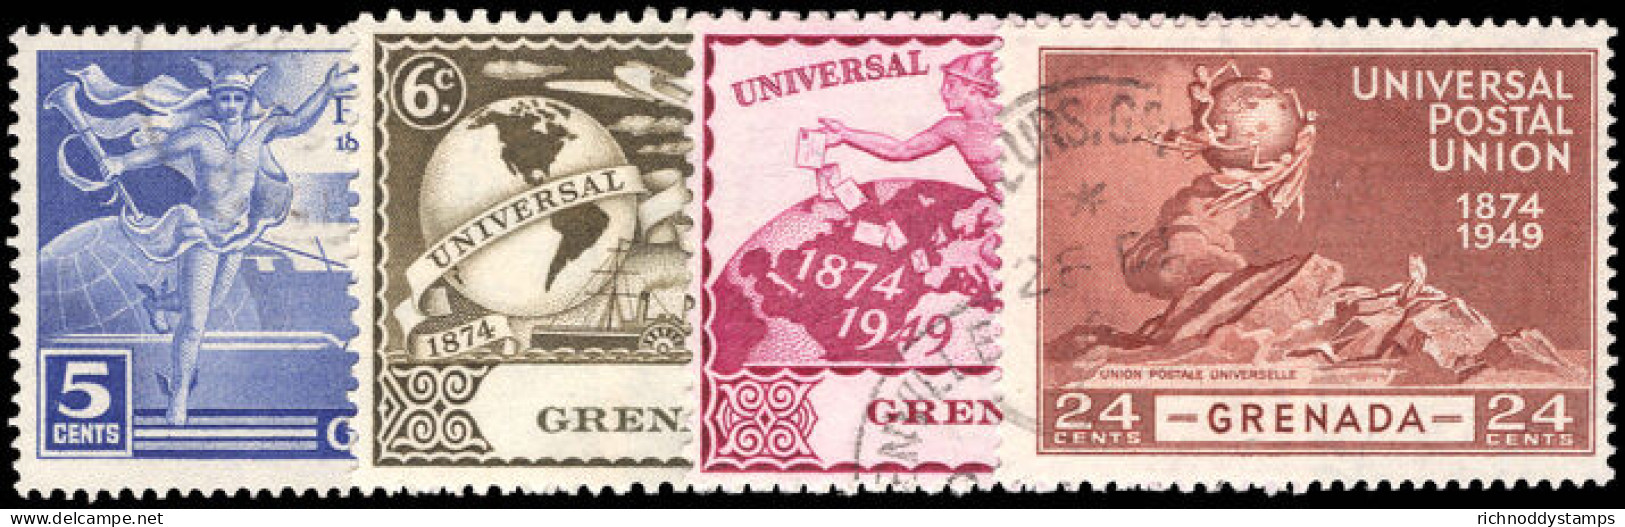 Grenada 1949 UPU Fine Used. - Grenade (...-1974)